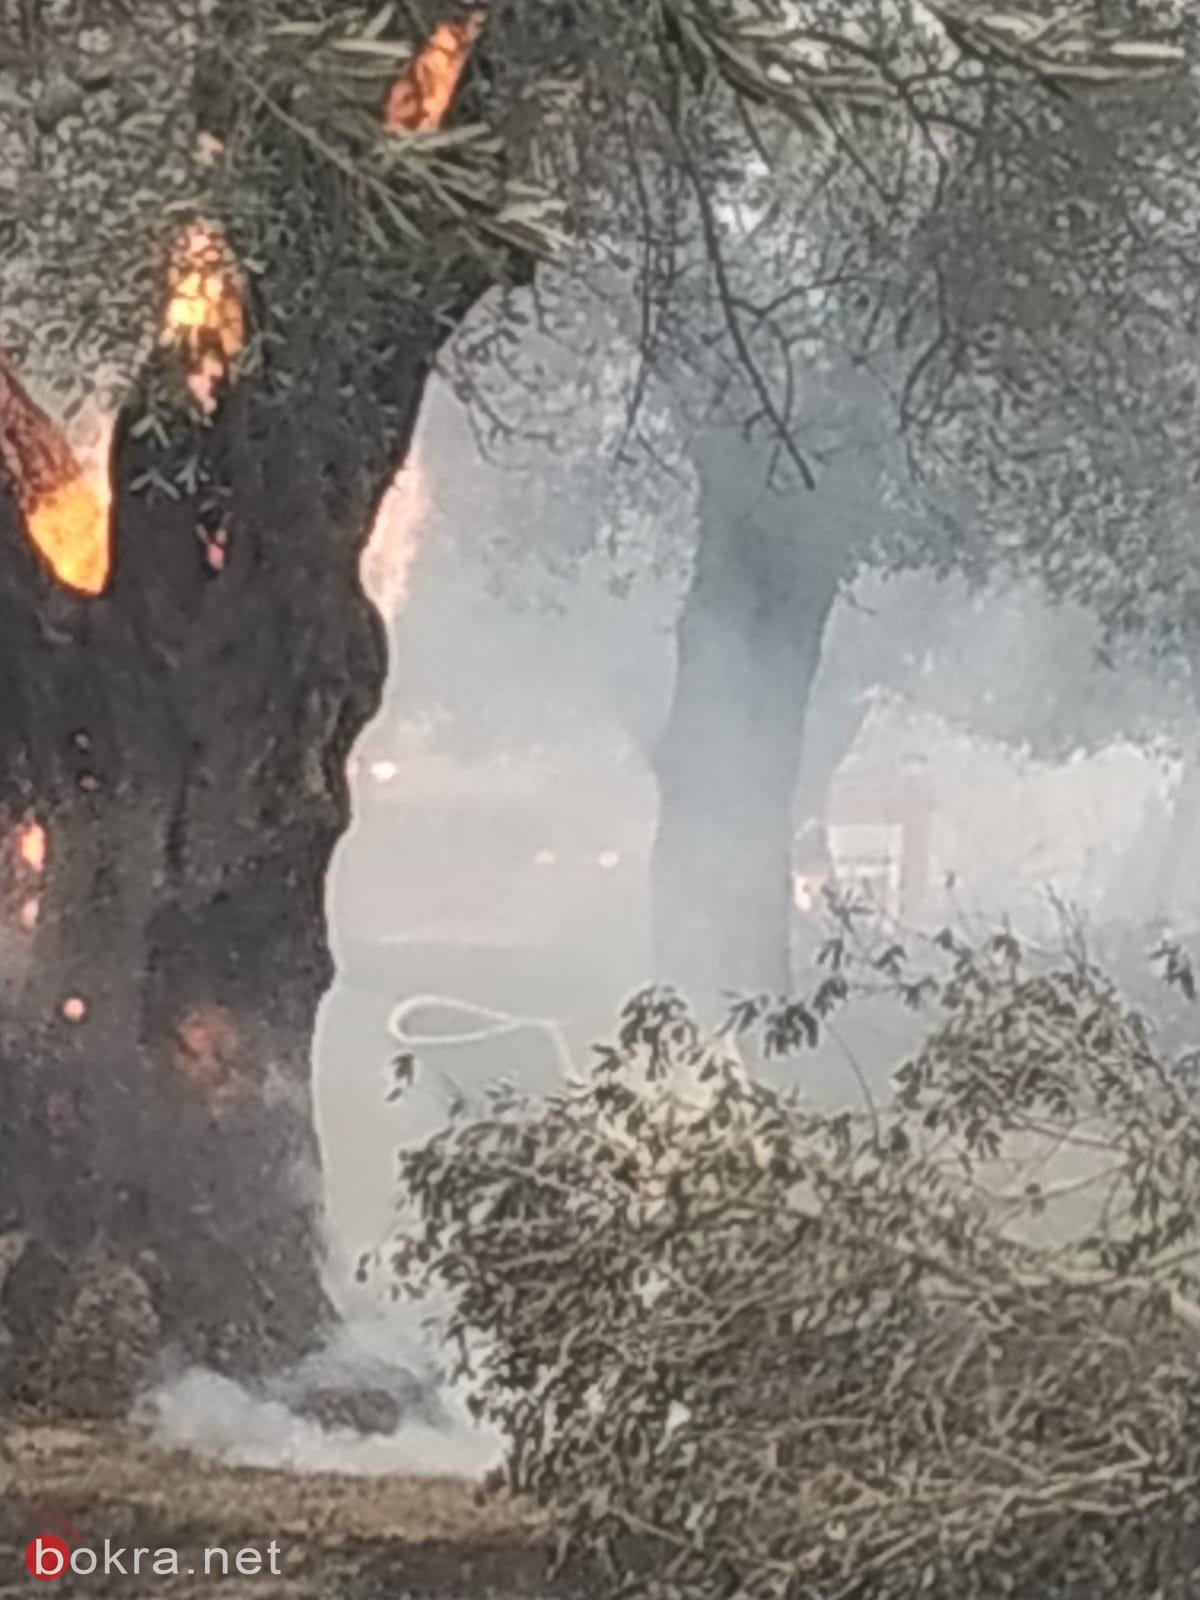 الحريق في ترشيحا- أندراوس: أضرار لكروم الزيتون والمصالح التجارية والأملاك!-15